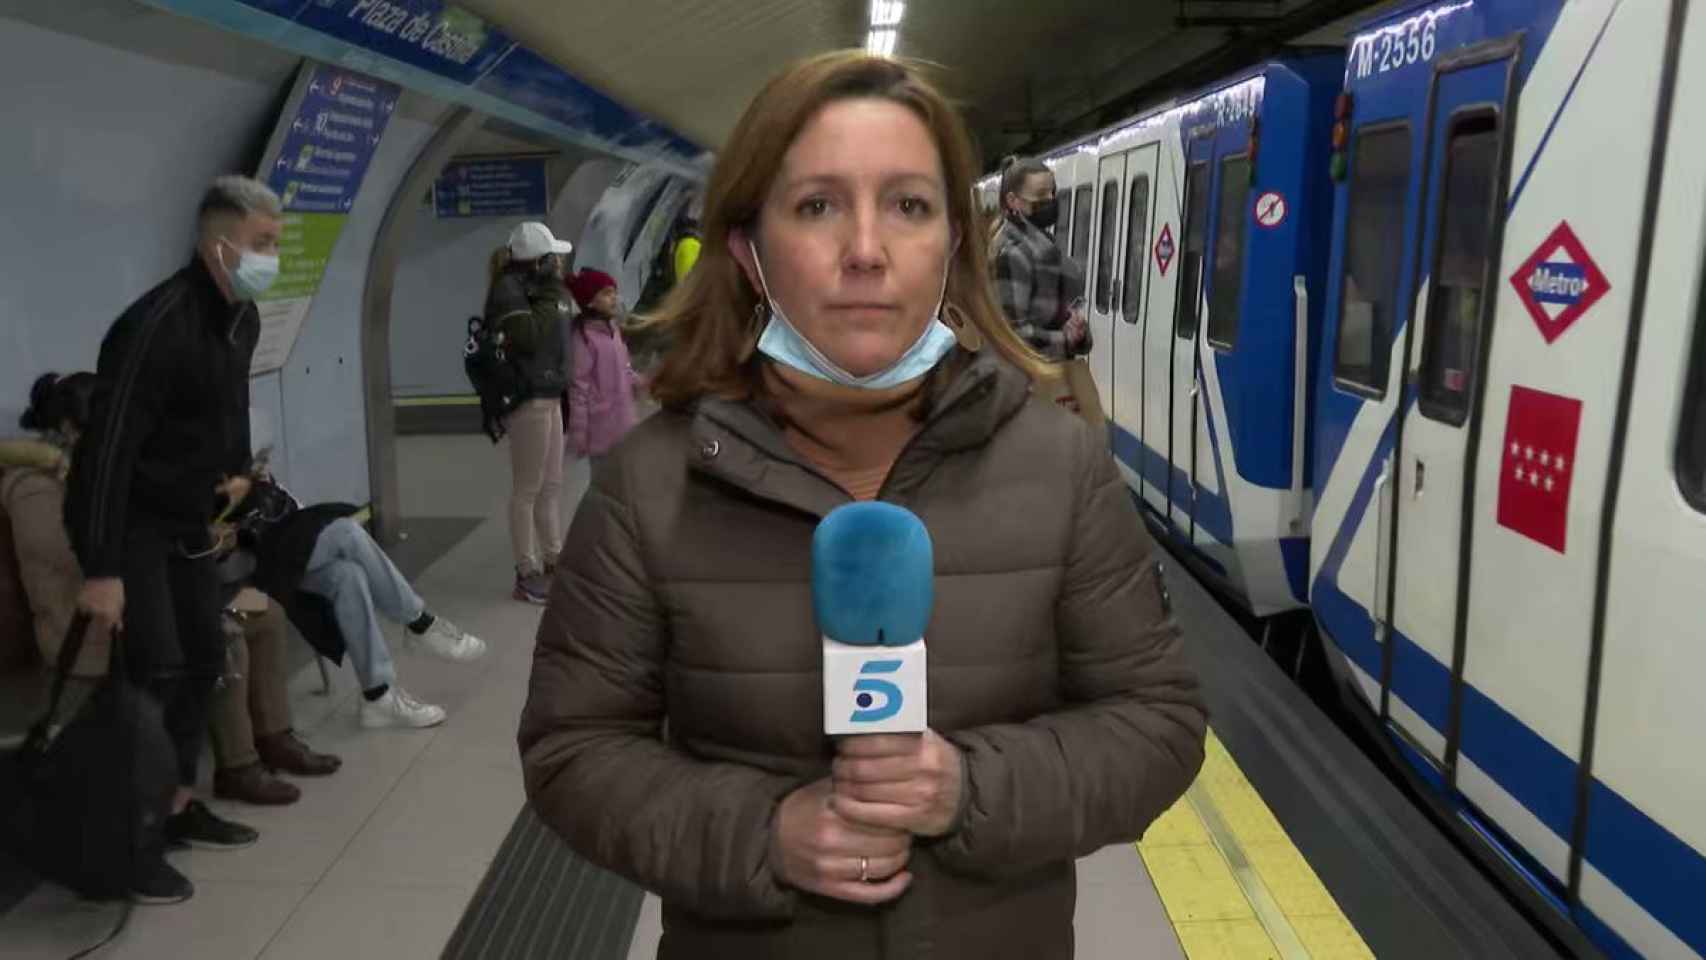 Una reportera de Telecinco comparte su divertido momento mientras grababa una noticia en el metro